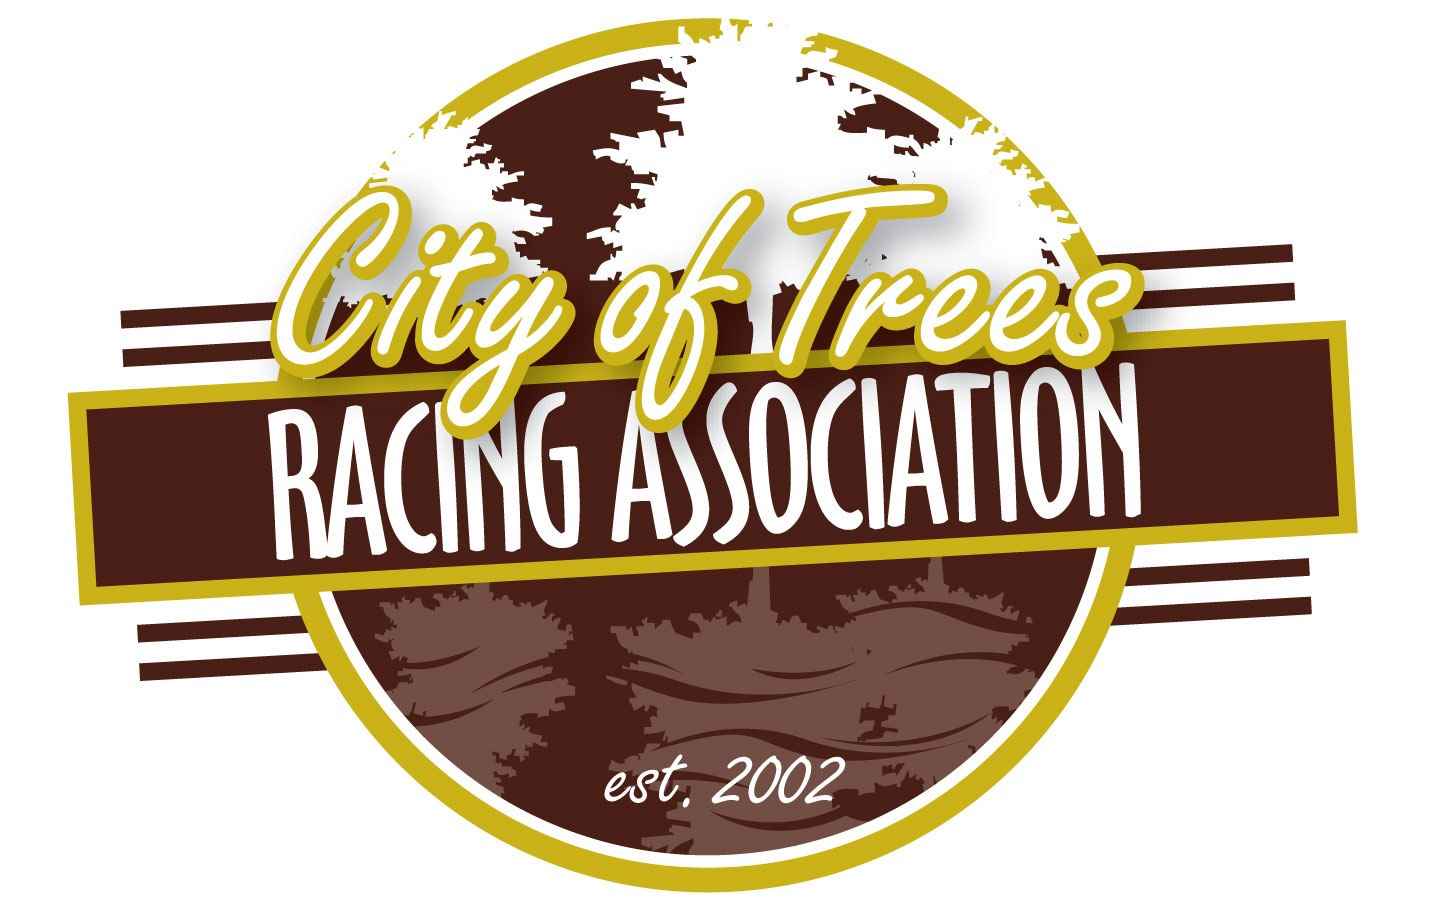 City of Trees Marathon